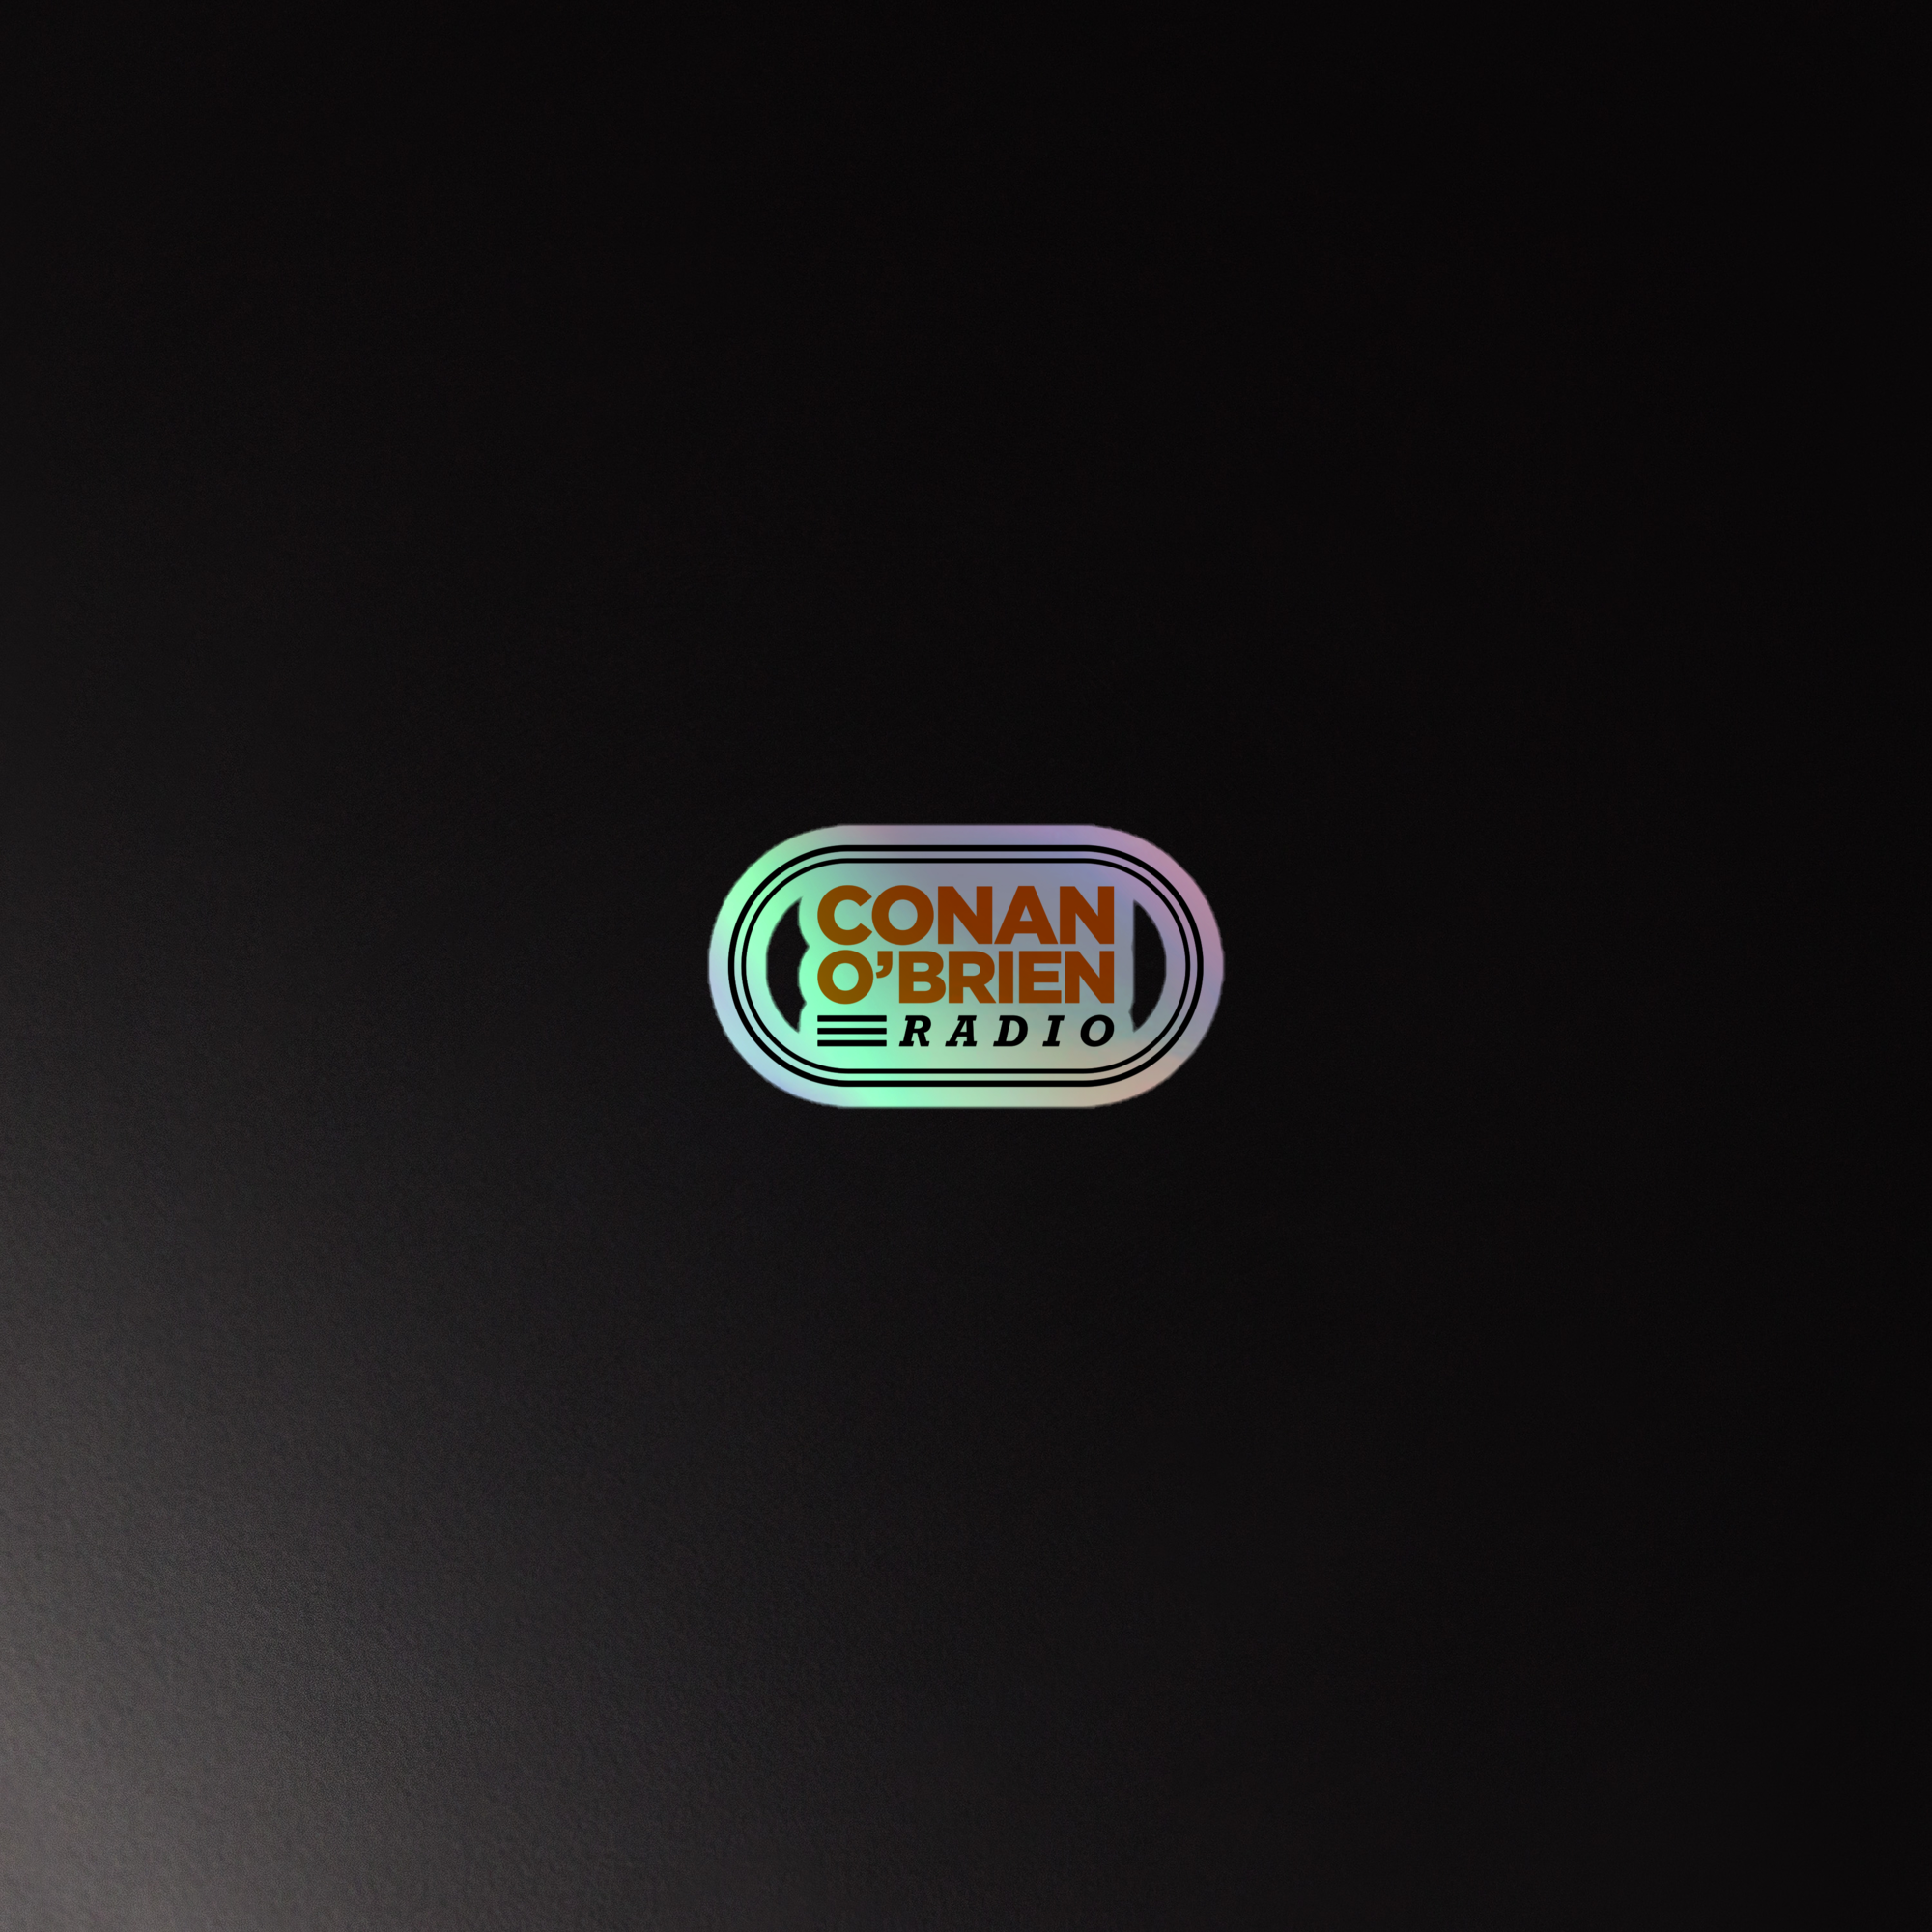 Conan O'Brien Radio: Holographic Sticker